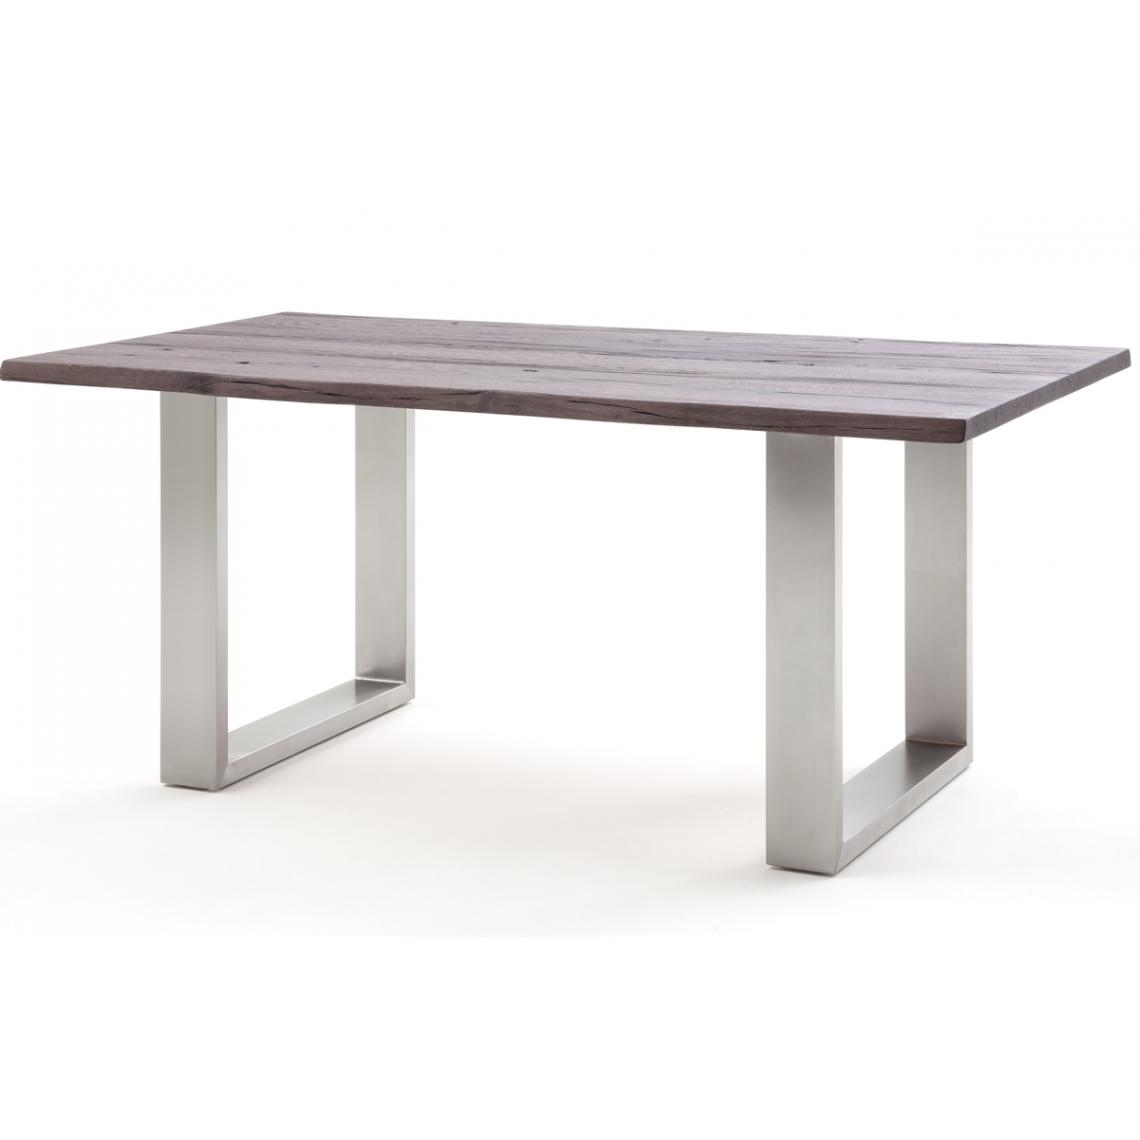 Pegane - Table à manger / table diner en chêne massif teinte vieilli - L.200 x H.77 x P.100 cm -PEGANE- - Tables à manger